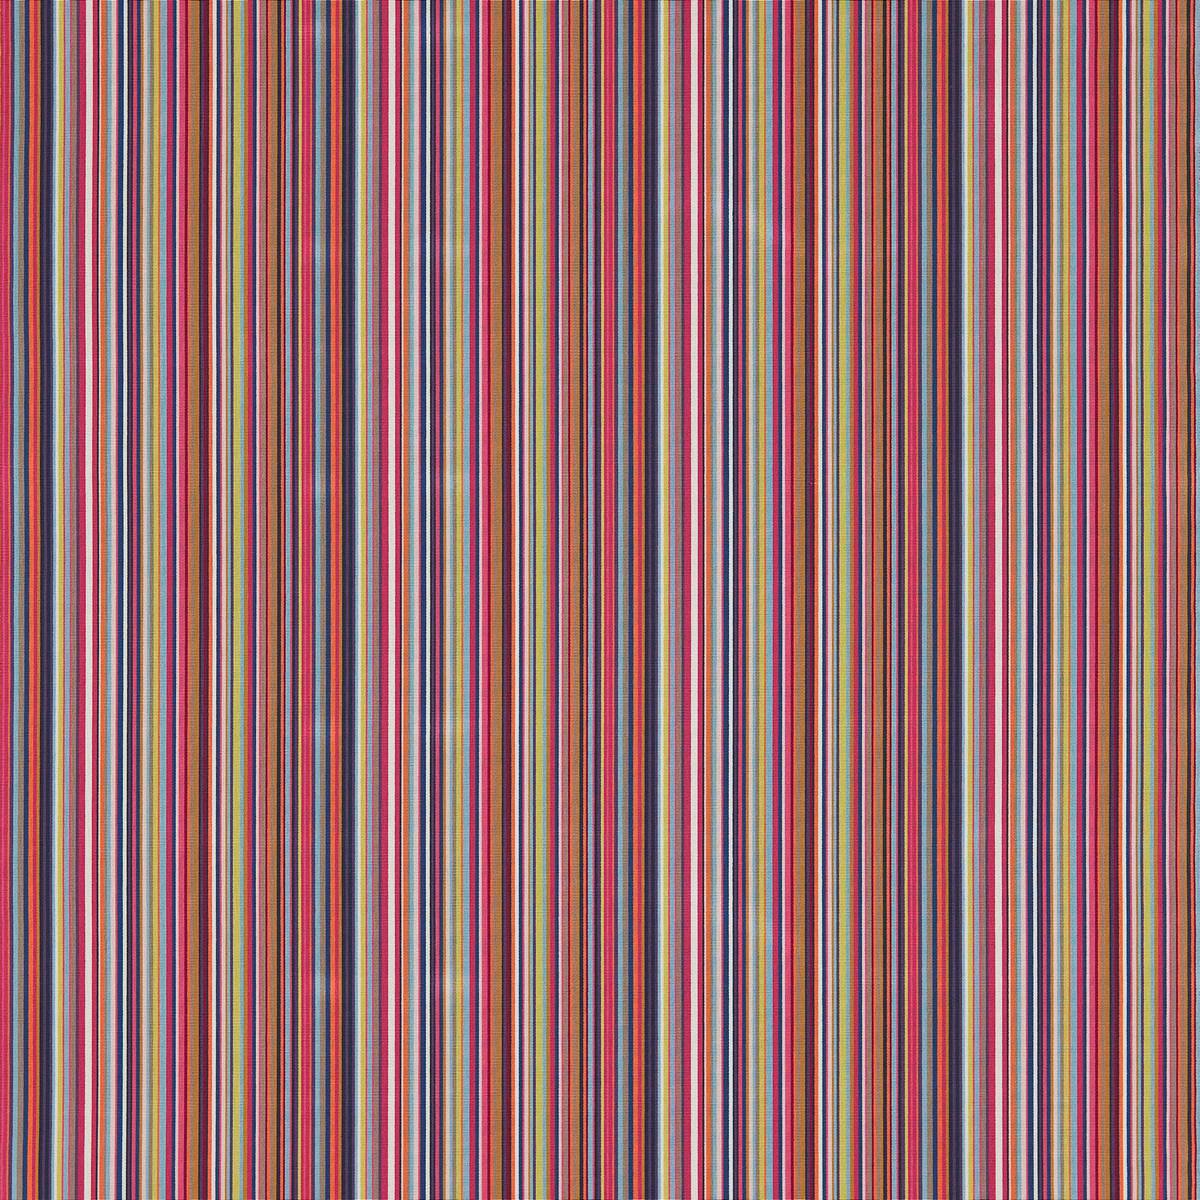 Zuri Cinnamon/Raspberry/Indigo Fabric by Harlequin